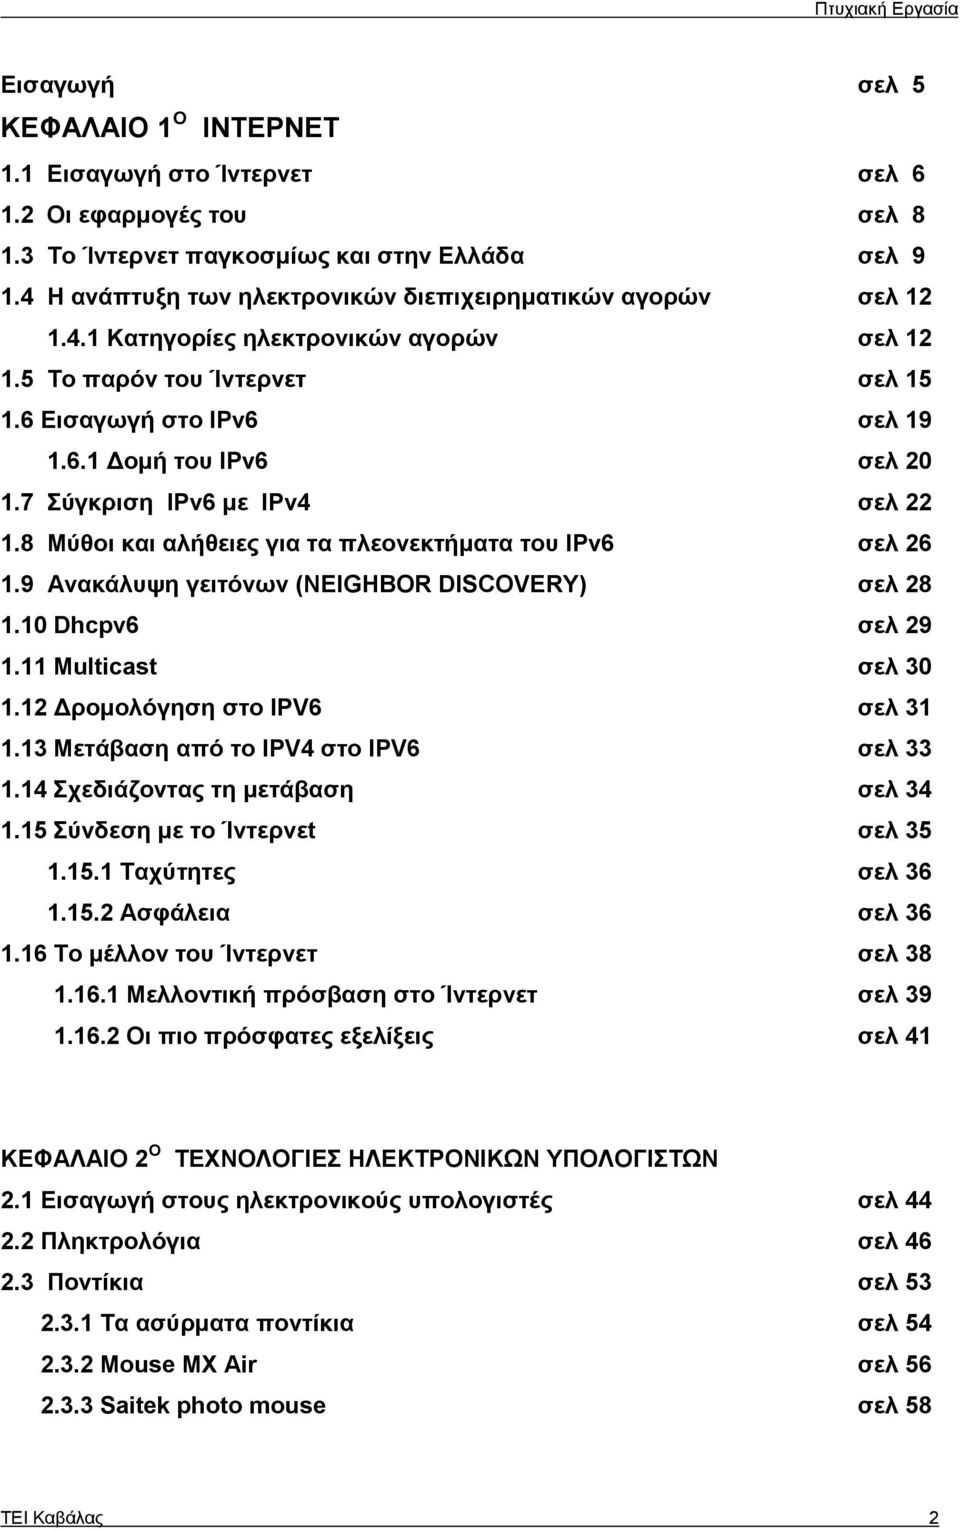 7 Σύγκριση IPv6 με IPv4 σελ 22 1.8 Μύθοι και αλήθειες για τα πλεονεκτήματα του IPv6 σελ 26 1.9 Ανακάλυψη γειτόνων (NEIGHBOR DISCOVERY) σελ 28 1.10 Dhcpv6 σελ 29 1.11 Multicast σελ 30 1.